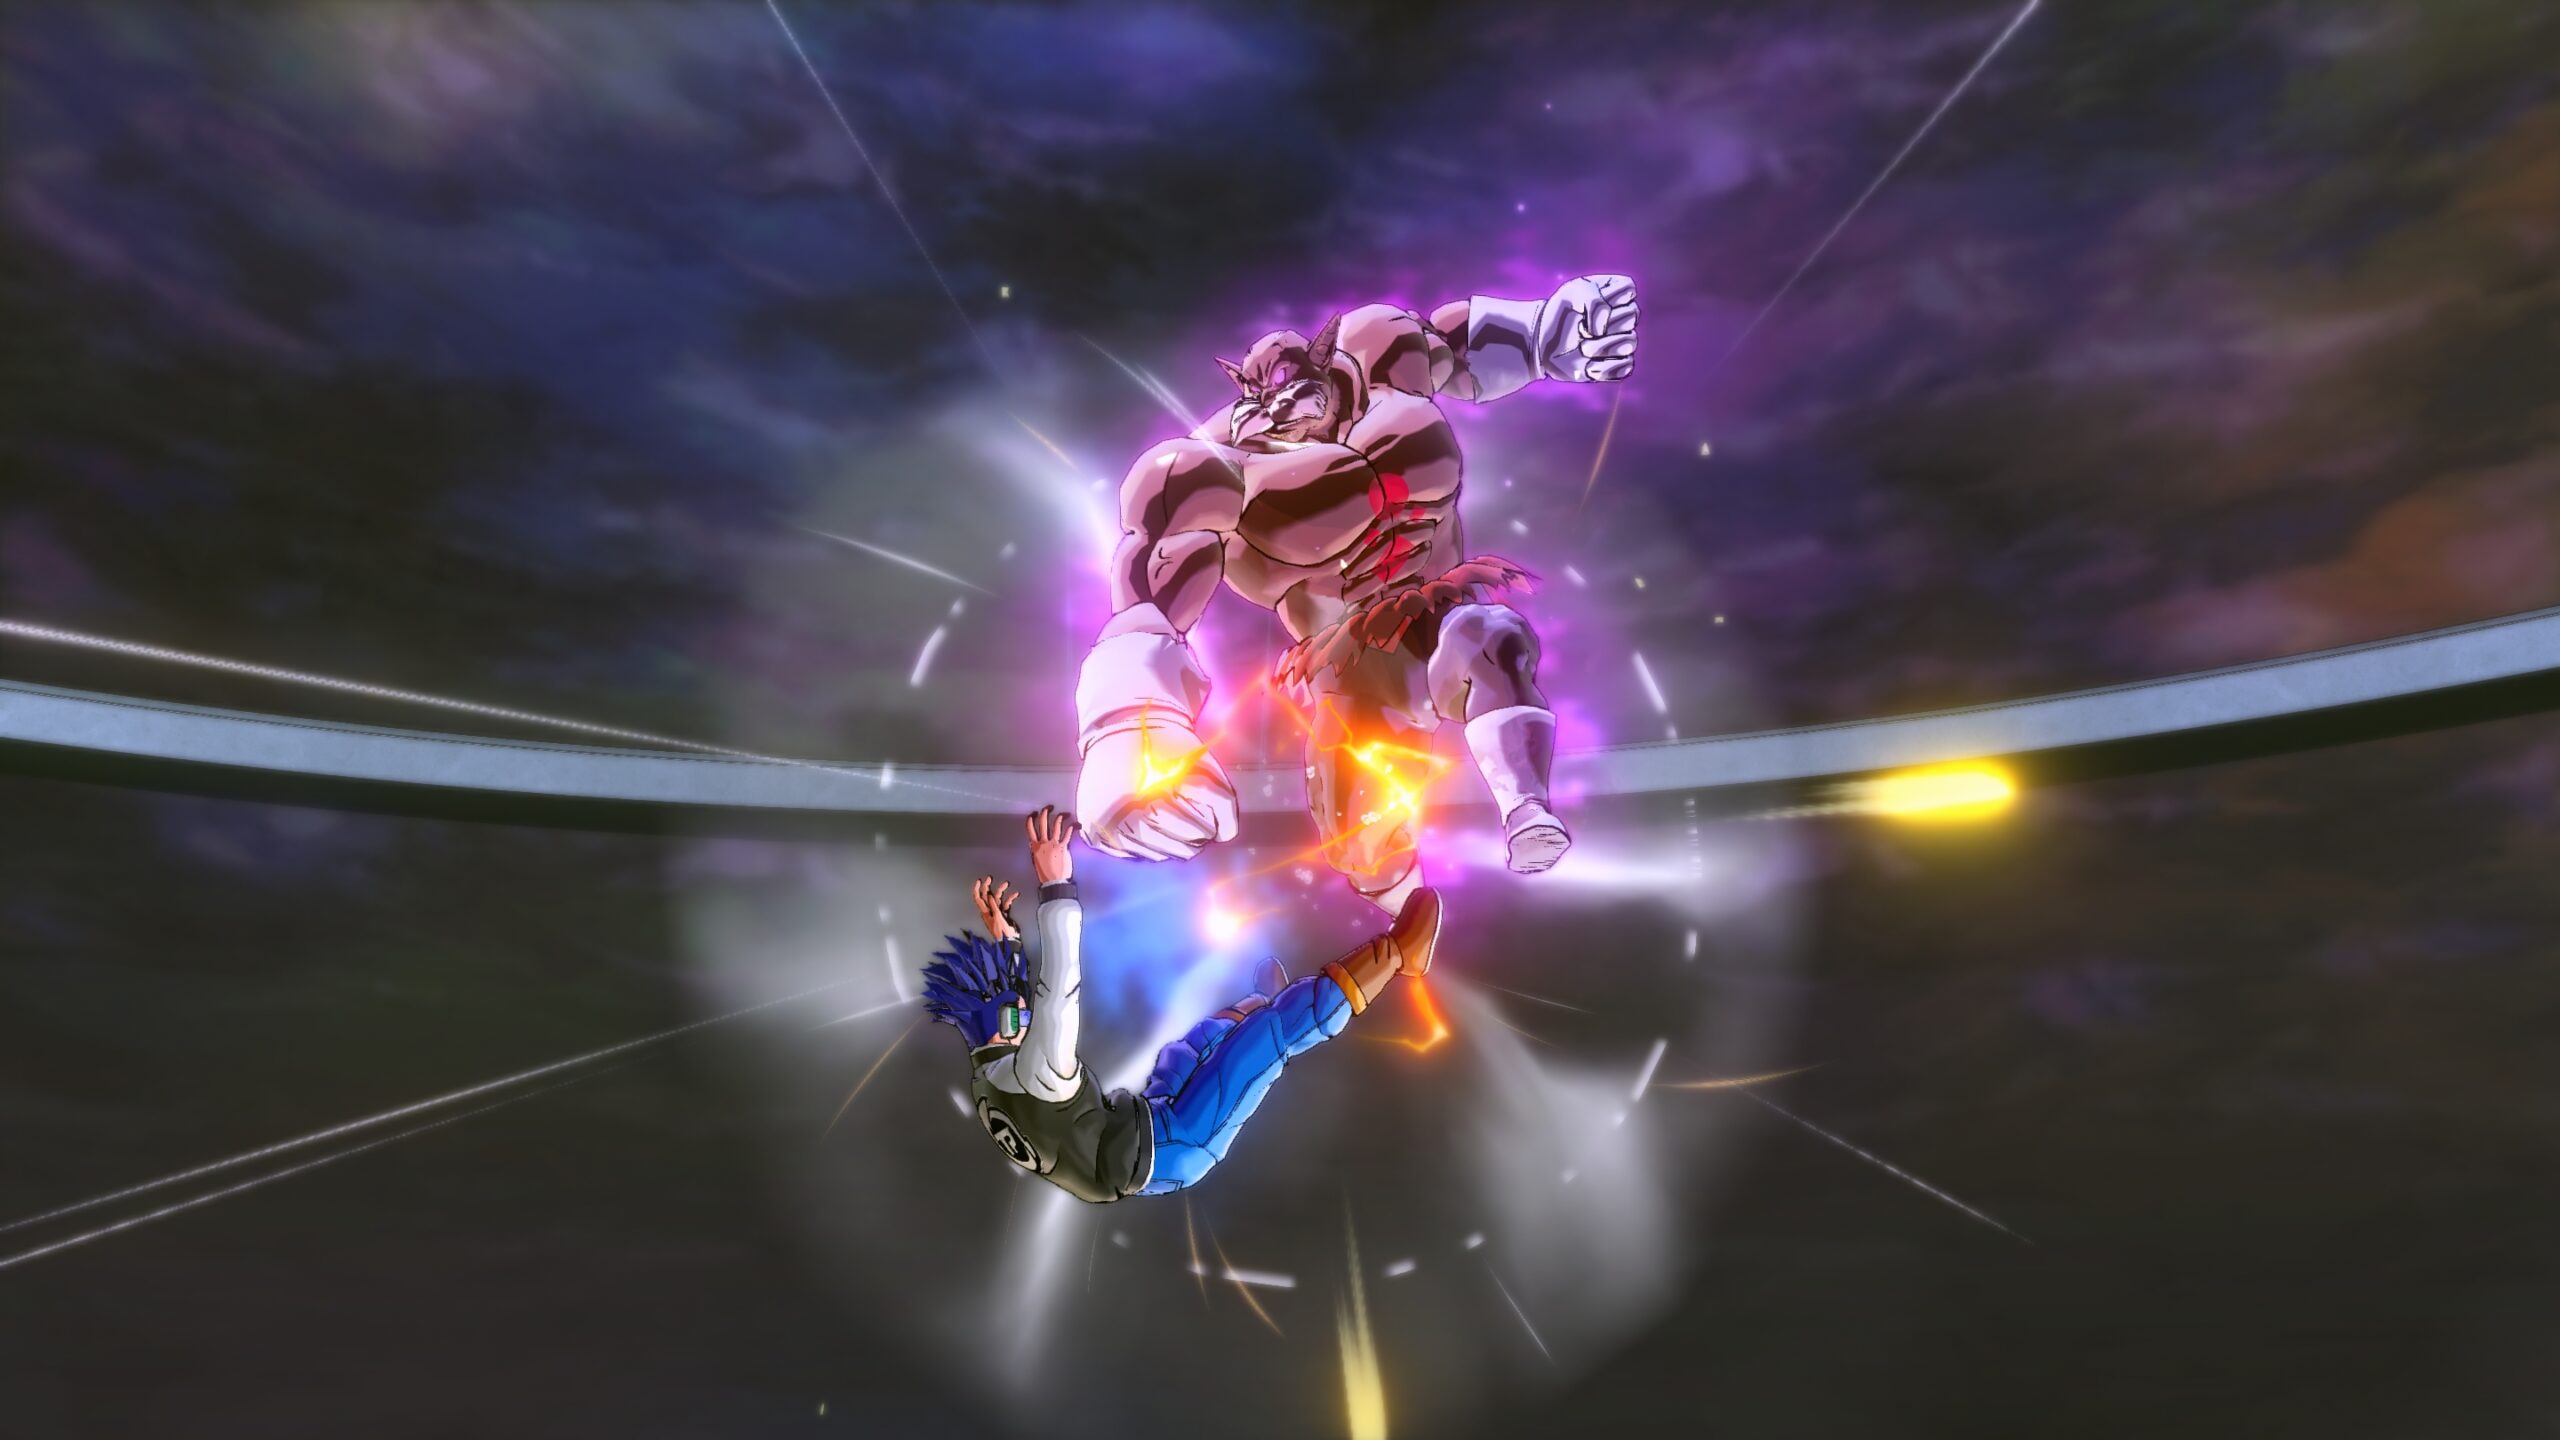 ドラゴンボール ゼノバース2 のdlcキャラクター トッポ 破壊神モード のスクリーンショットが公開 Nintendo Switch 情報ブログ